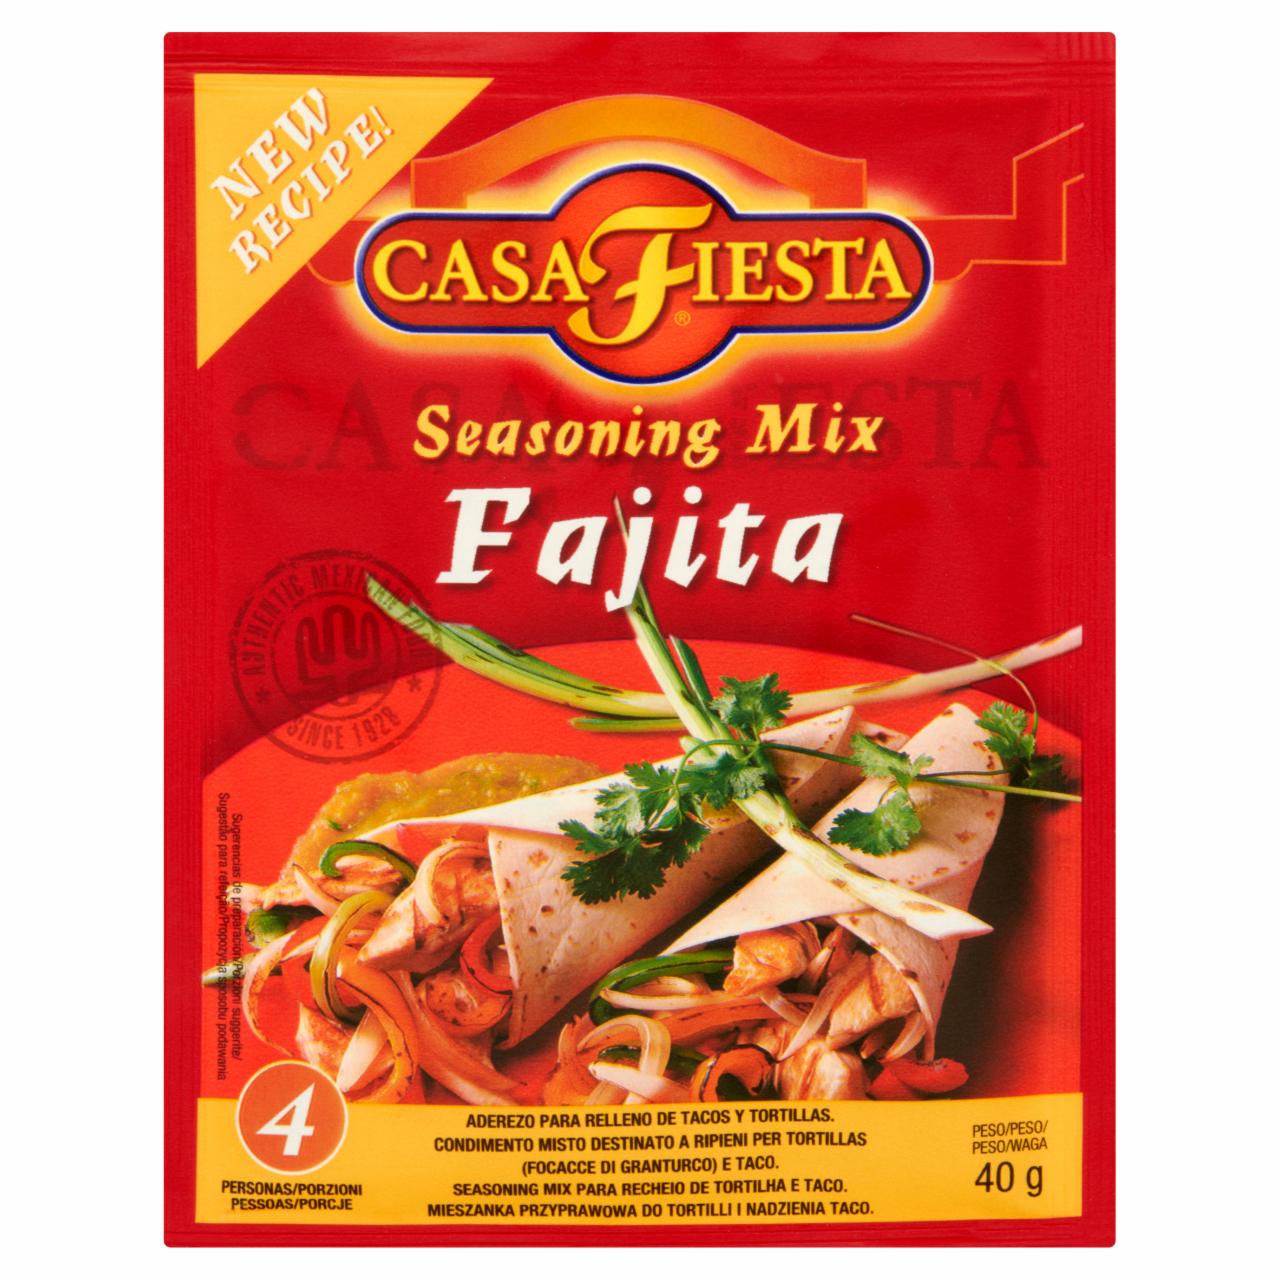 Zdjęcia - Casa Fiesta Fajita Mieszanka przyprawowa do tortilli i nadzienia taco 40 g